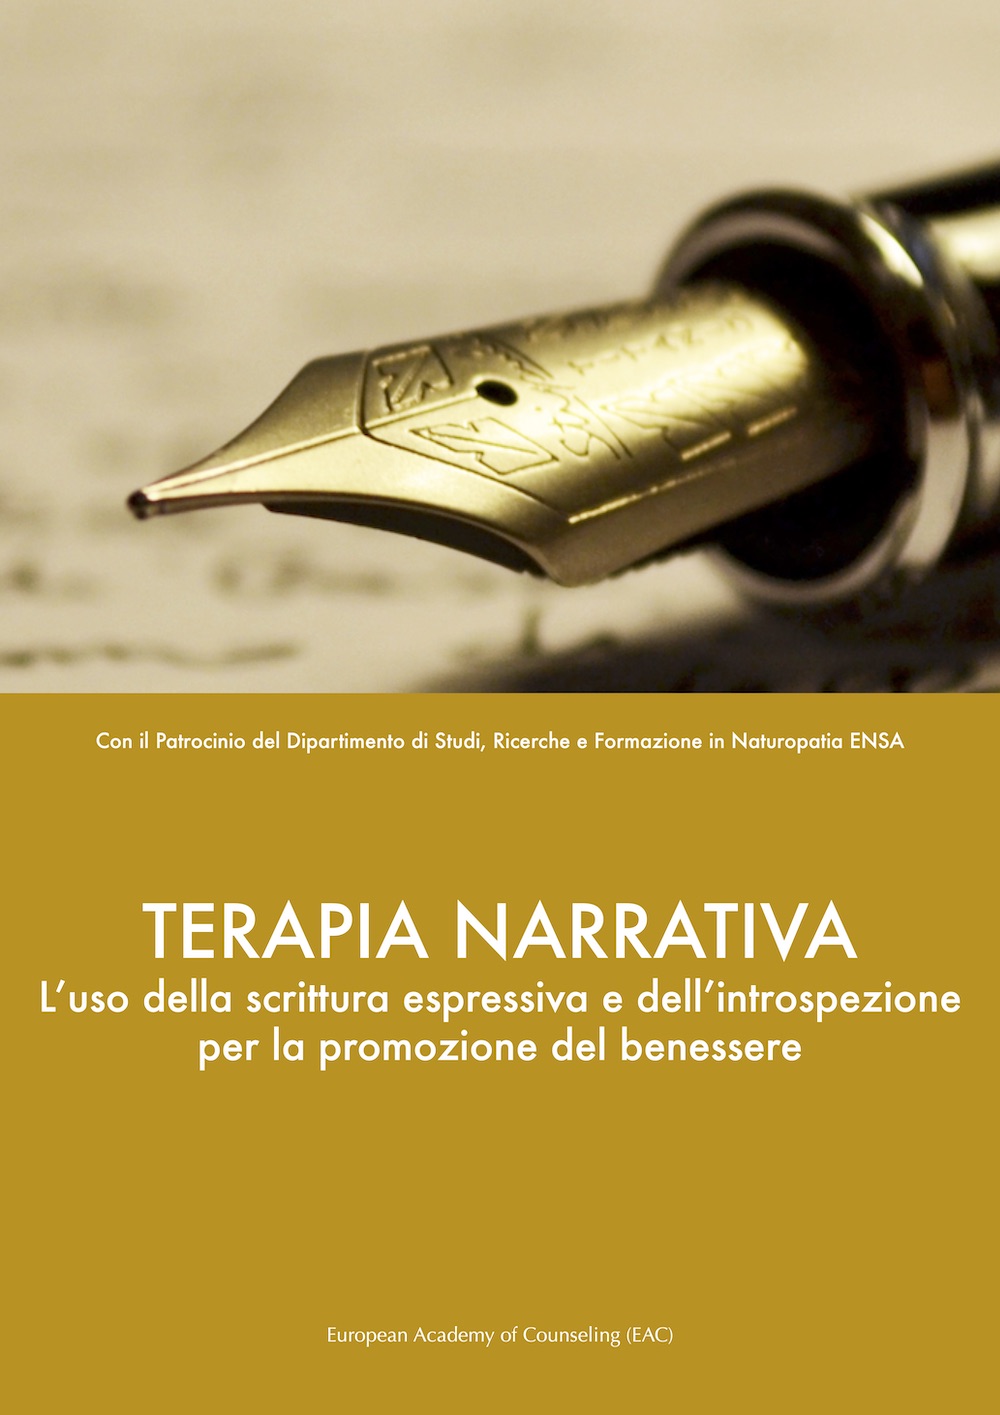 Terapia narrativa (writing therapy)